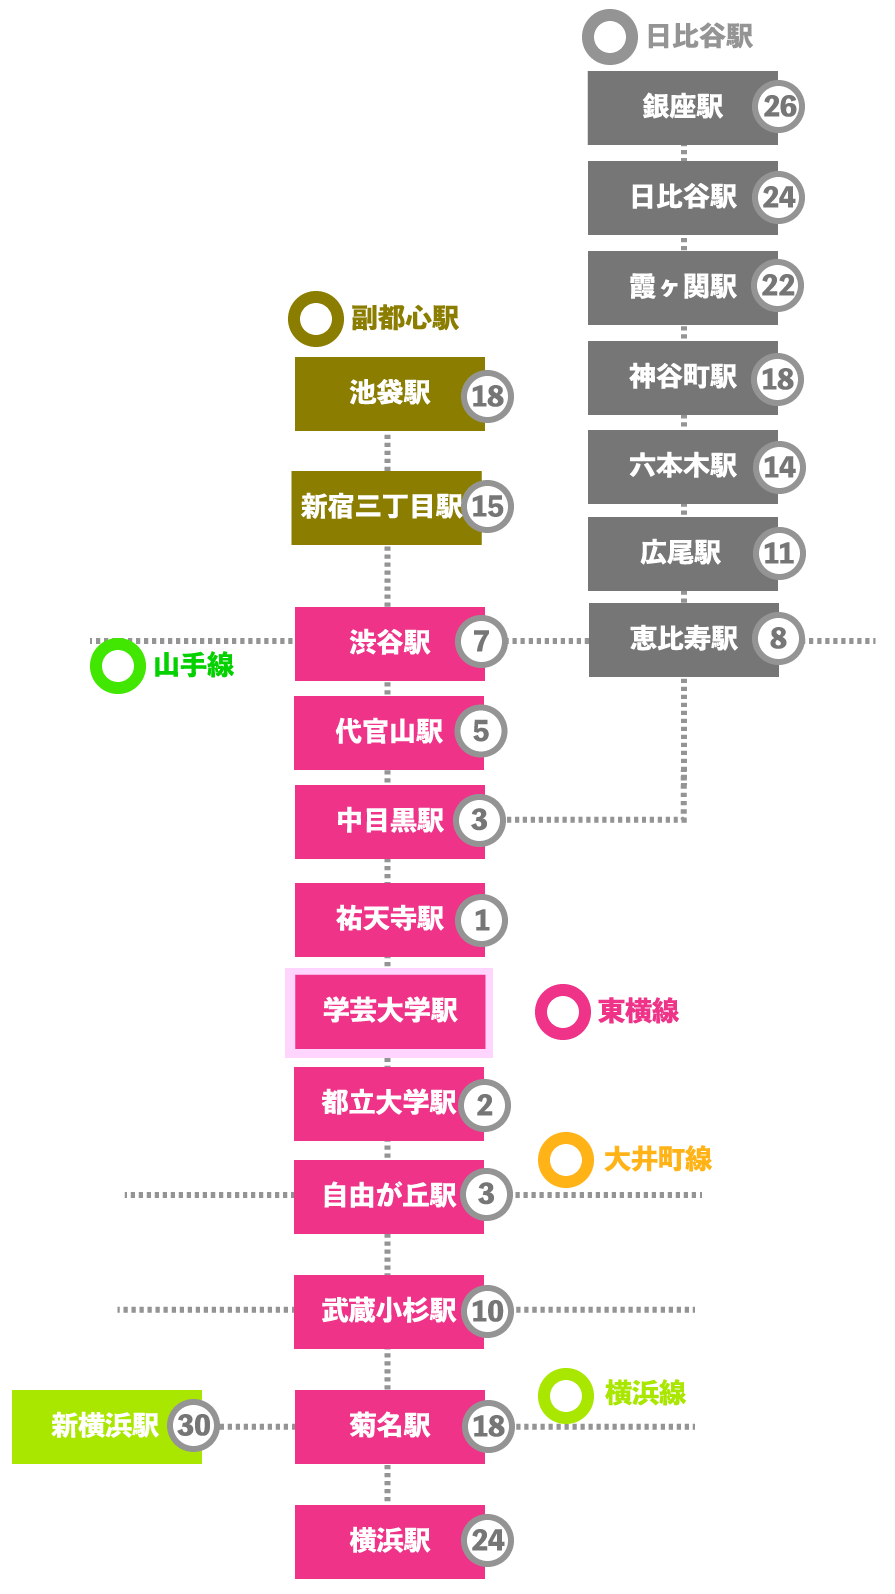 この画像は学芸大学駅から各駅までの乗車時間をまとめた図です。